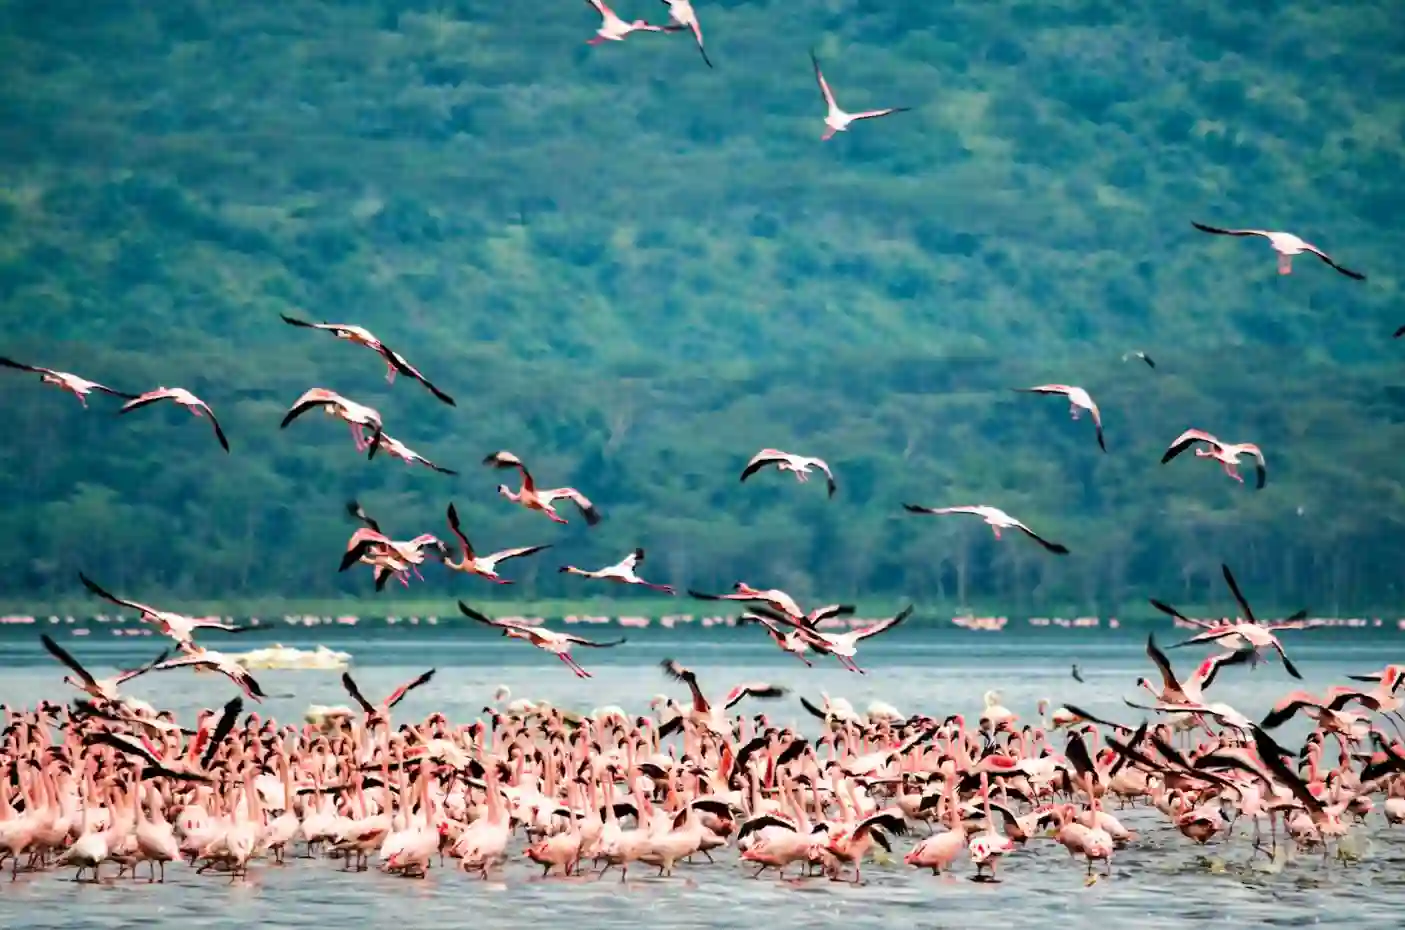 I:\AXUMIMAGES\Afrika\Kenya\Great Rift Valley\Flamingos